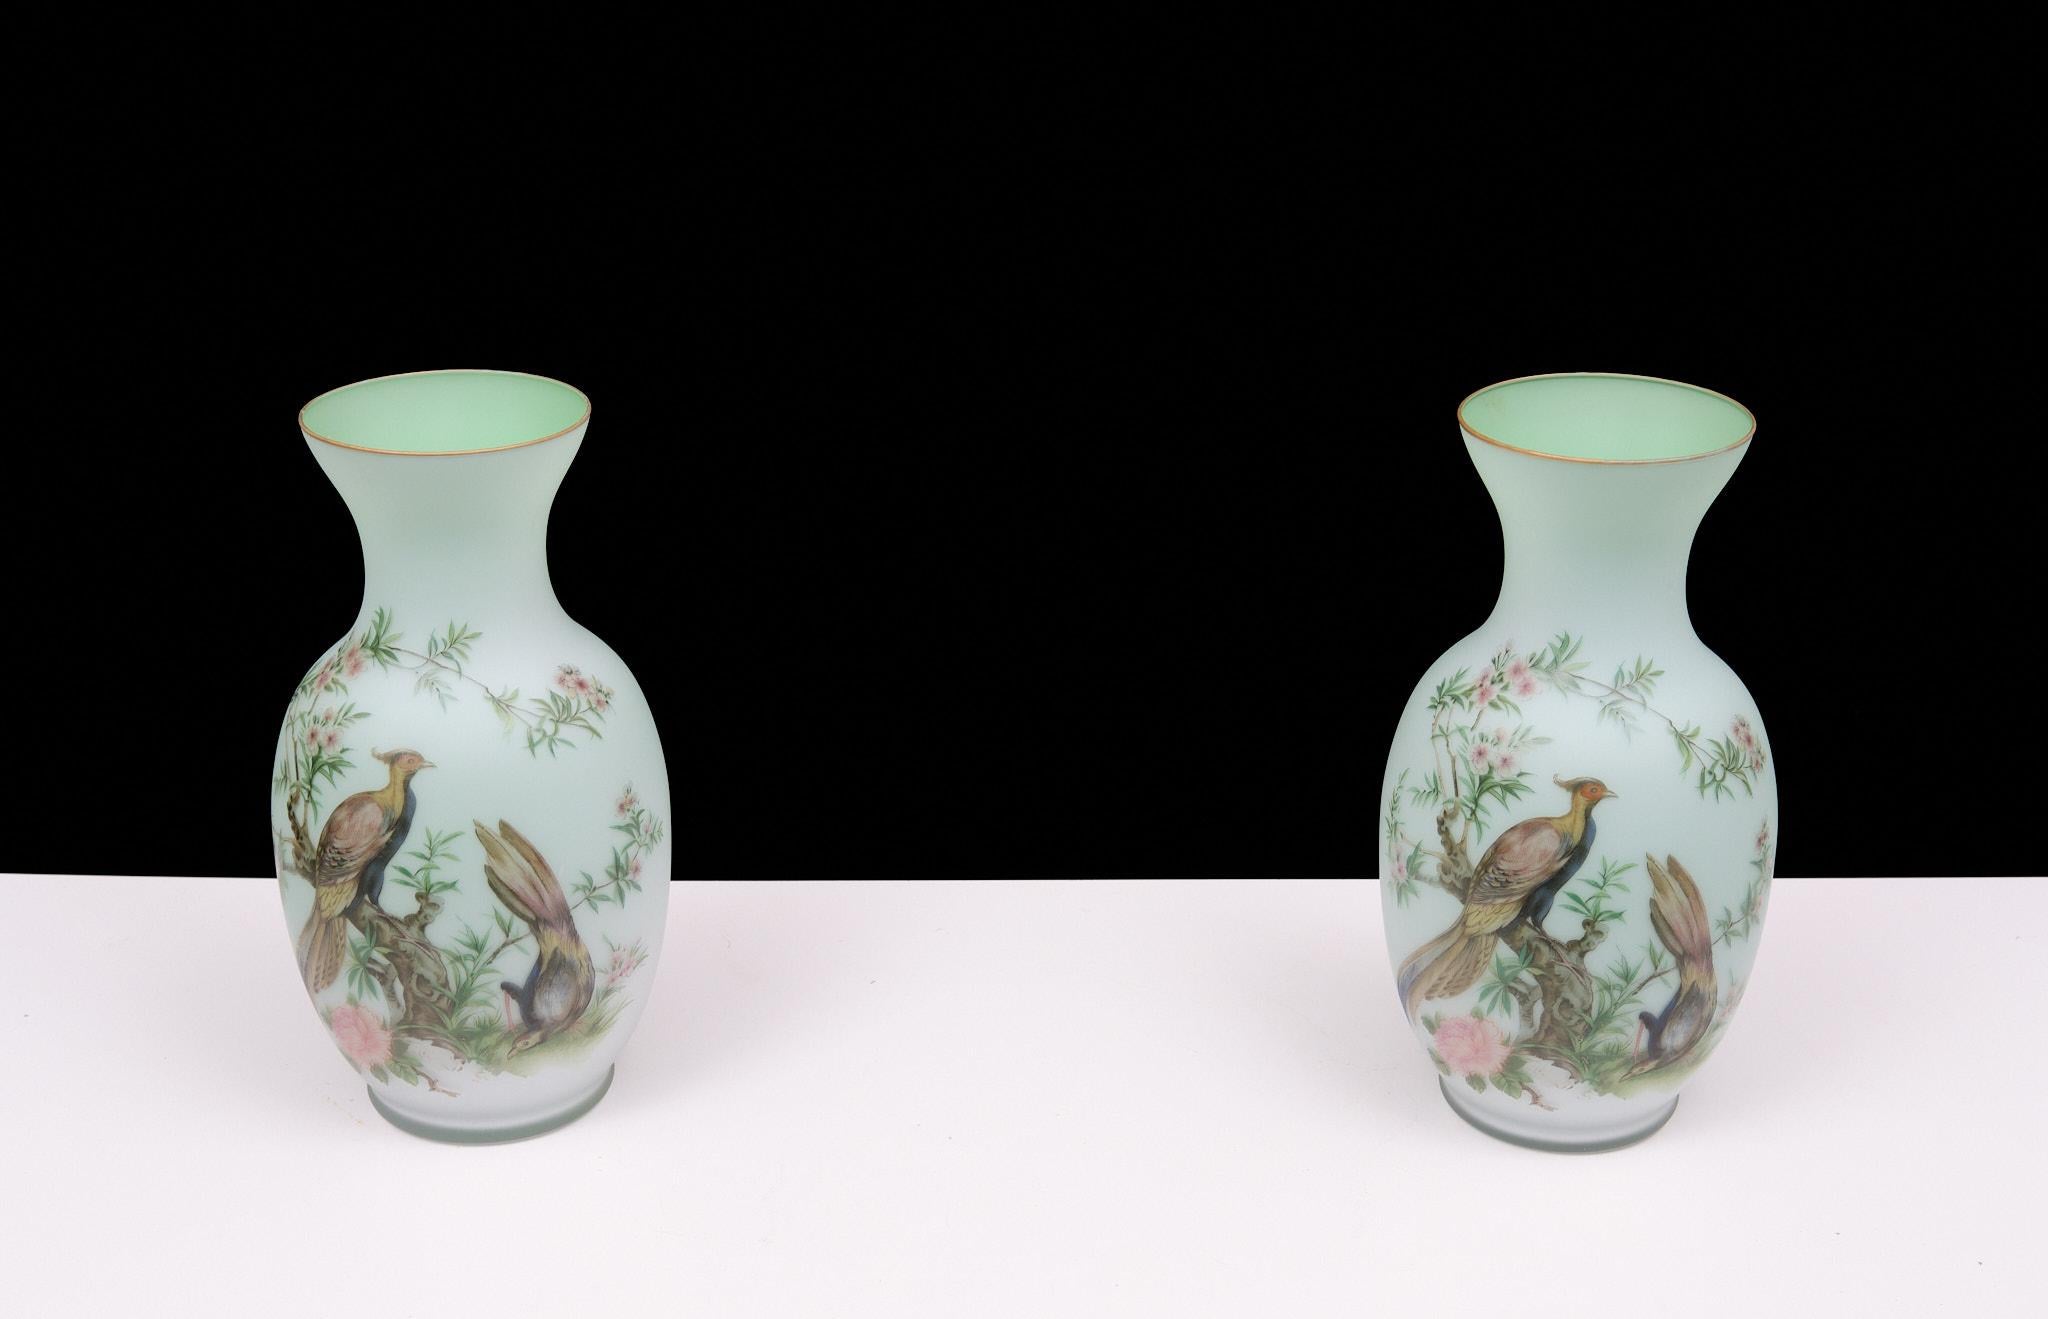 Il s'agit d'un vase en opaline Norleans, fabriqué en Italie et peint à la main. Il représente trois faisans avec des branches d'arbres fleuries. L'intérieur est vert citron et la bordure est dorée. Il représente trois faisans avec des branches